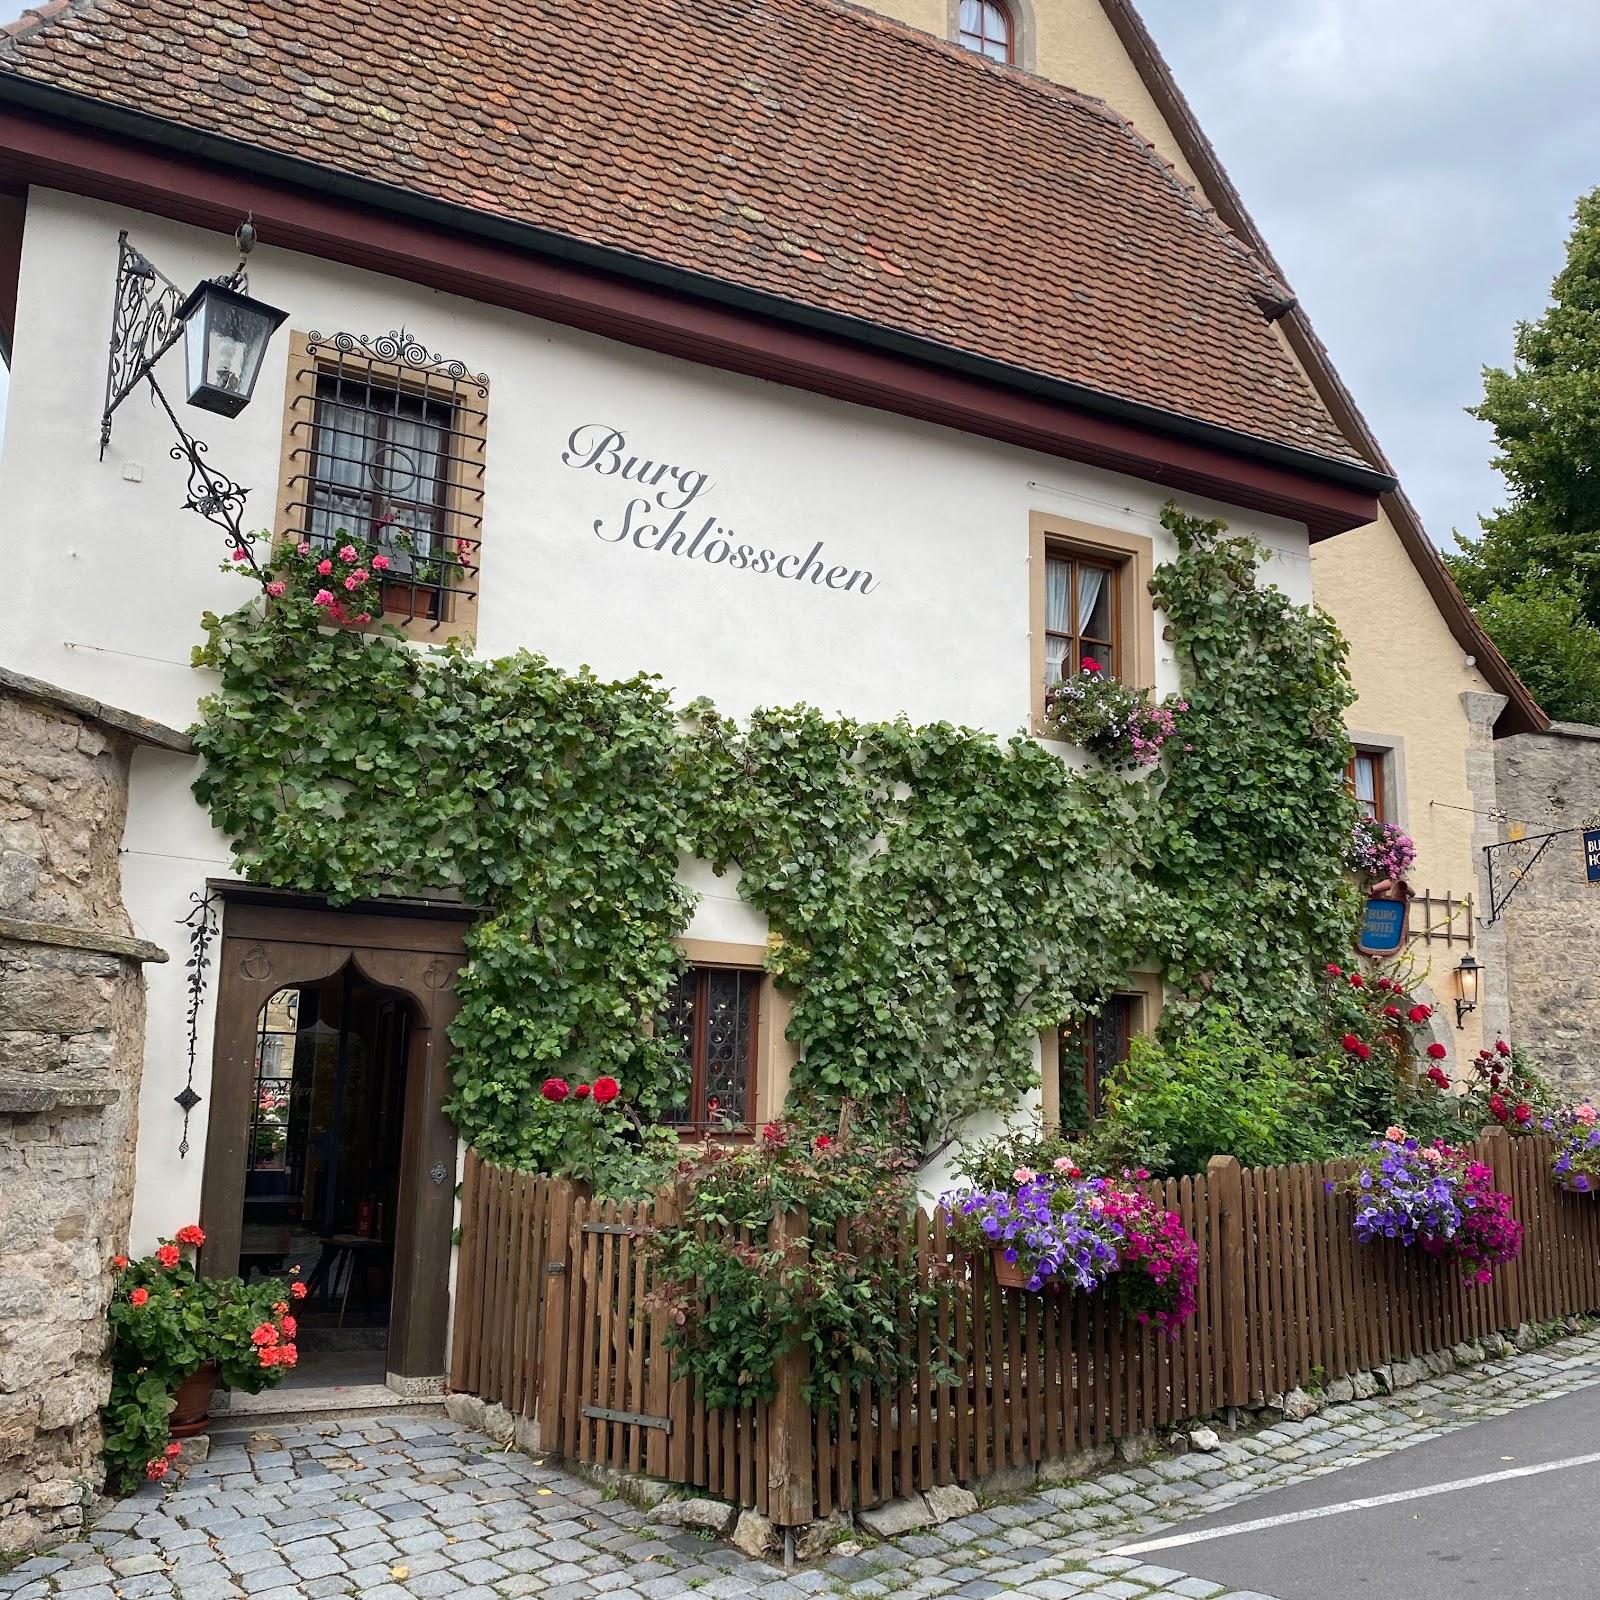 Restaurant "Burg-Hotel" in Rothenburg ob der Tauber